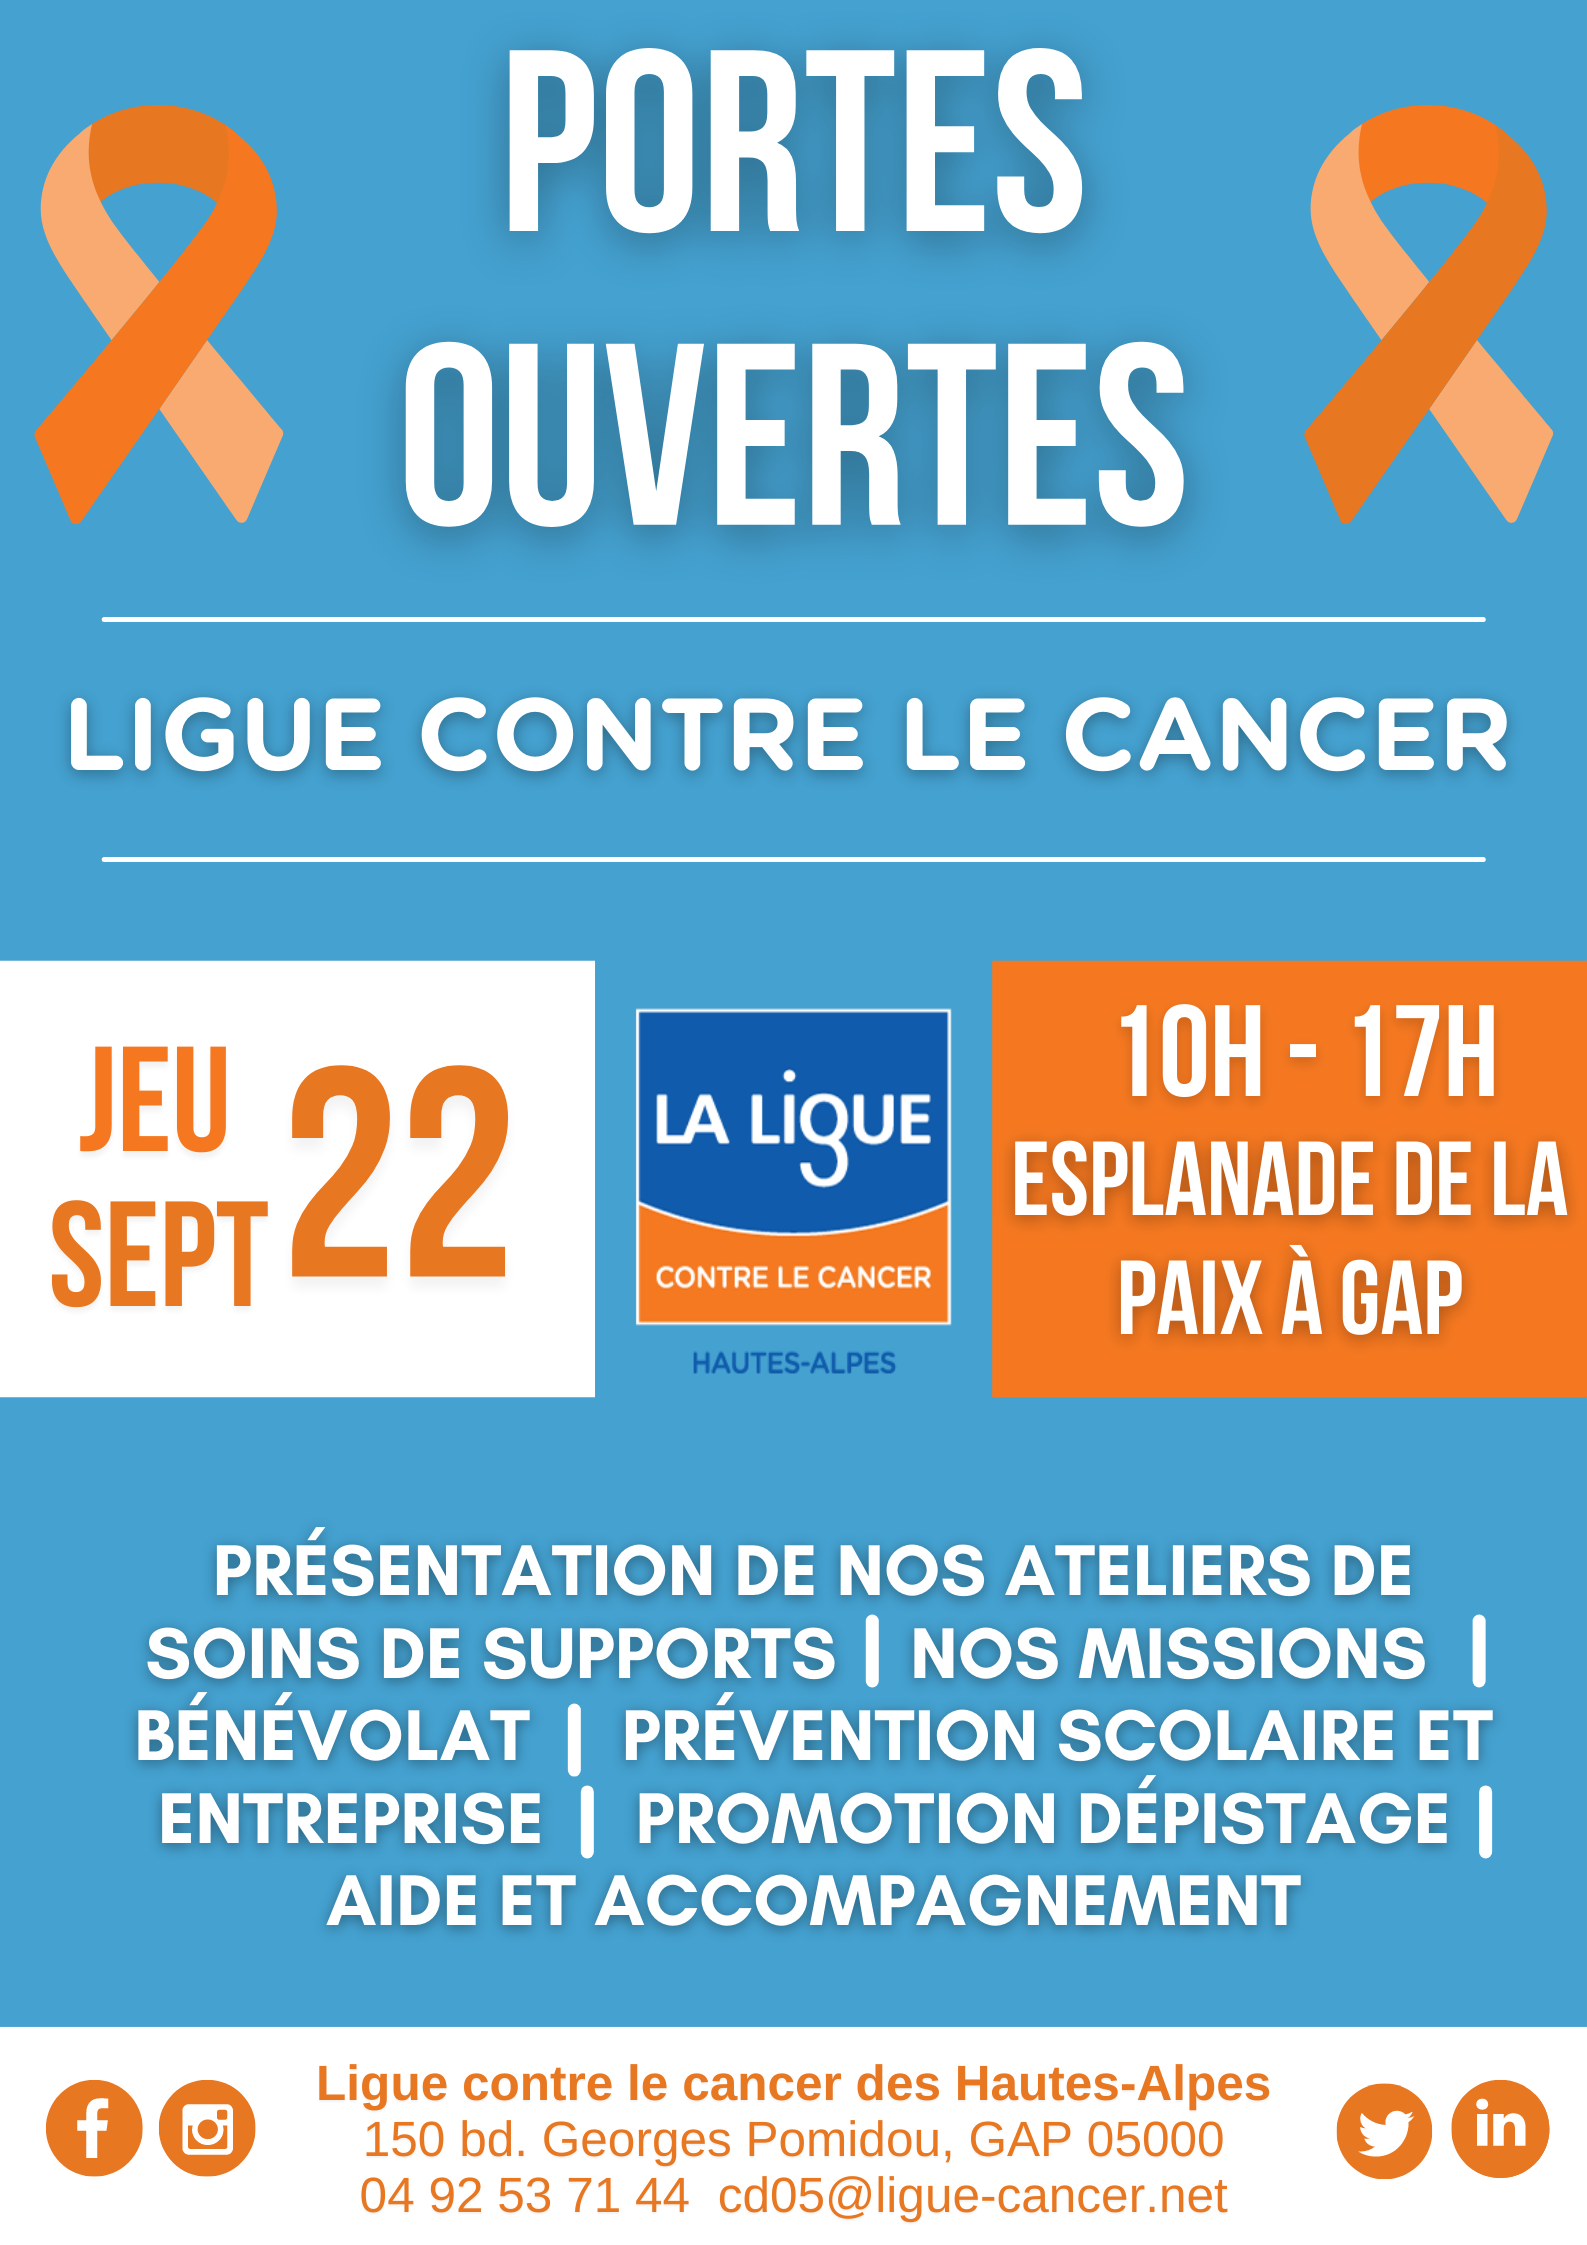 Journée portes ouvertes de la Ligue contre le cancer ce jeudi 22 septembre